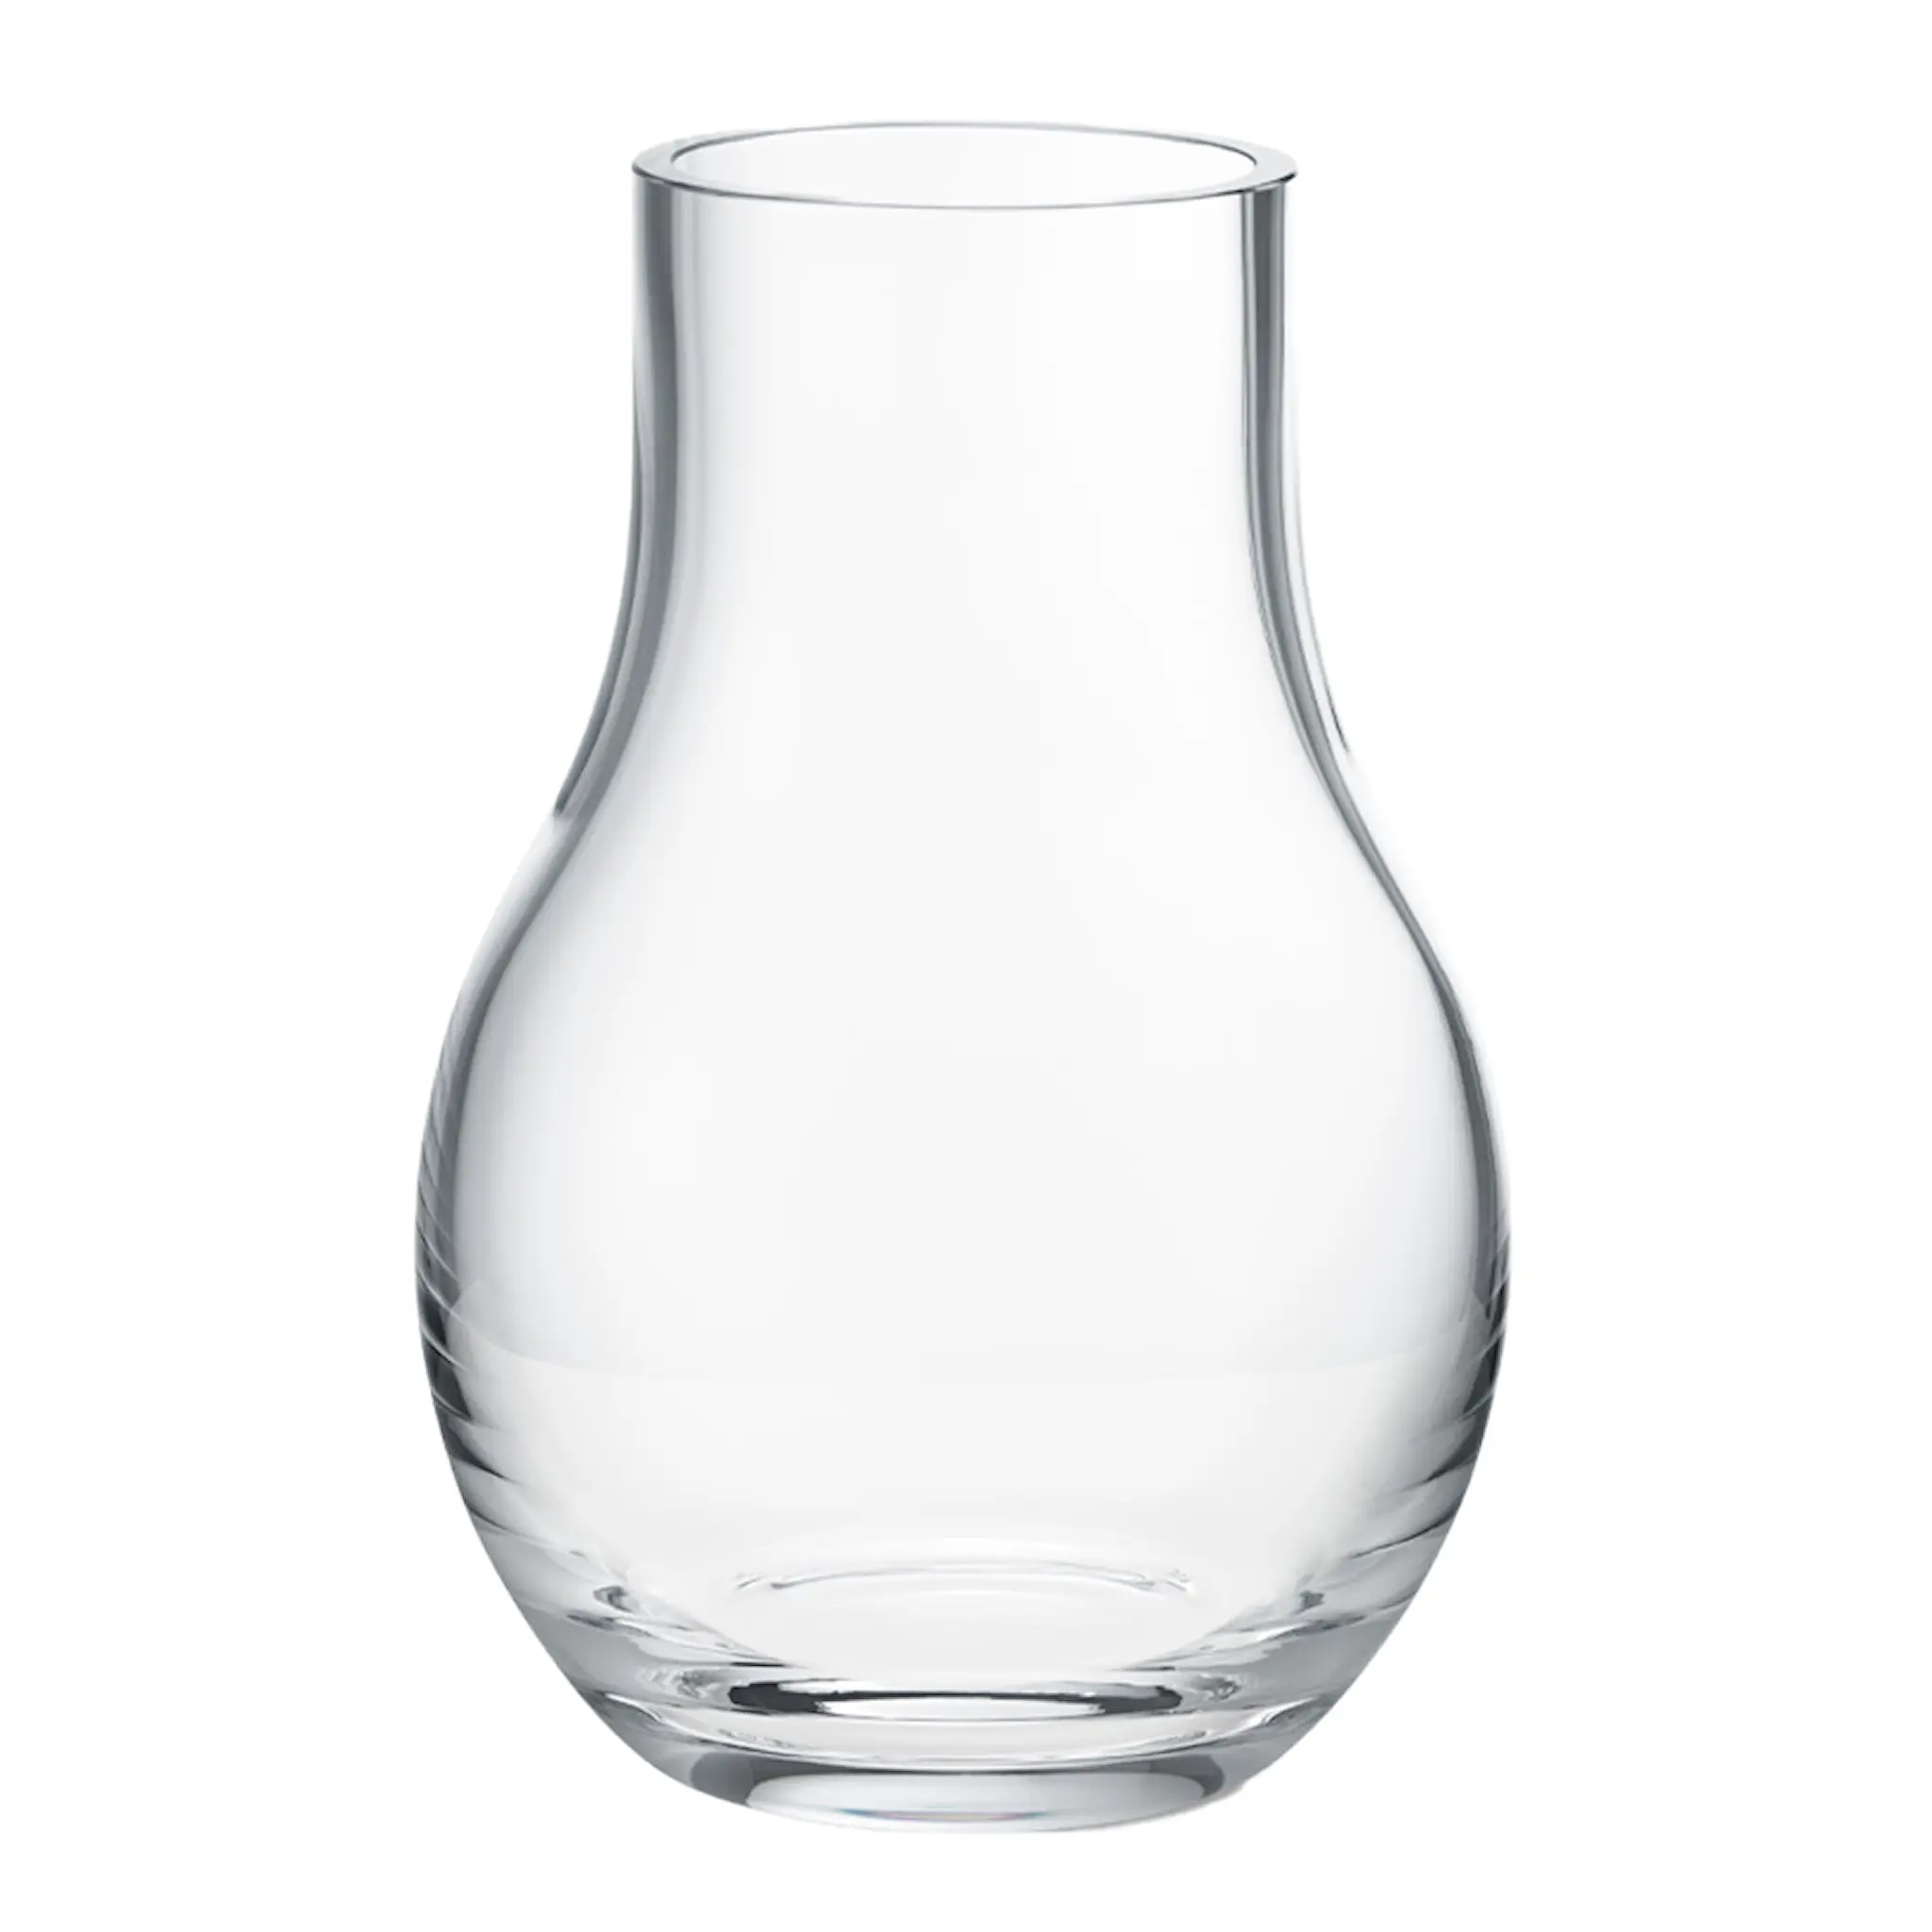 Georg Jensen Cafu Vas glas 21,6 cm Klar